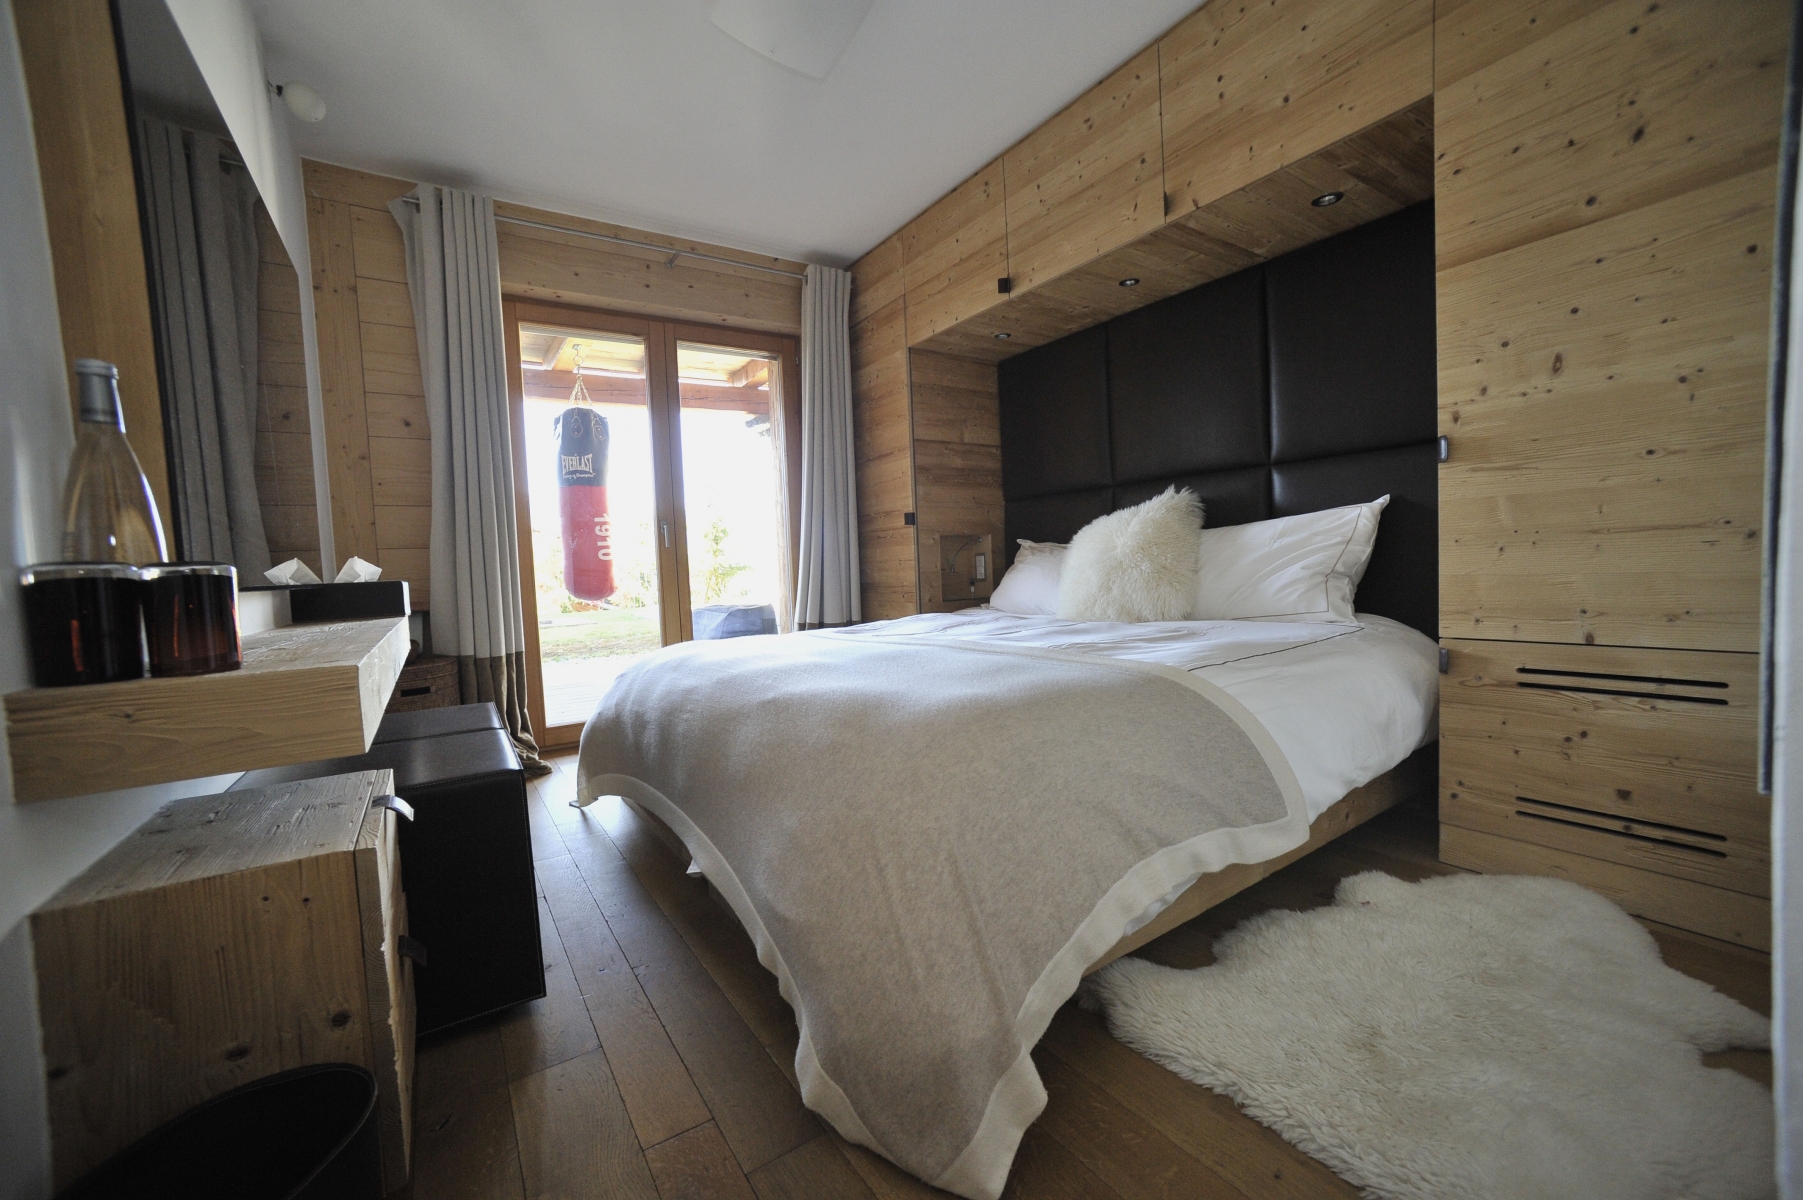 Près de 23 000 lits sont disponibles sur la plateforme Airbnb en Valais.